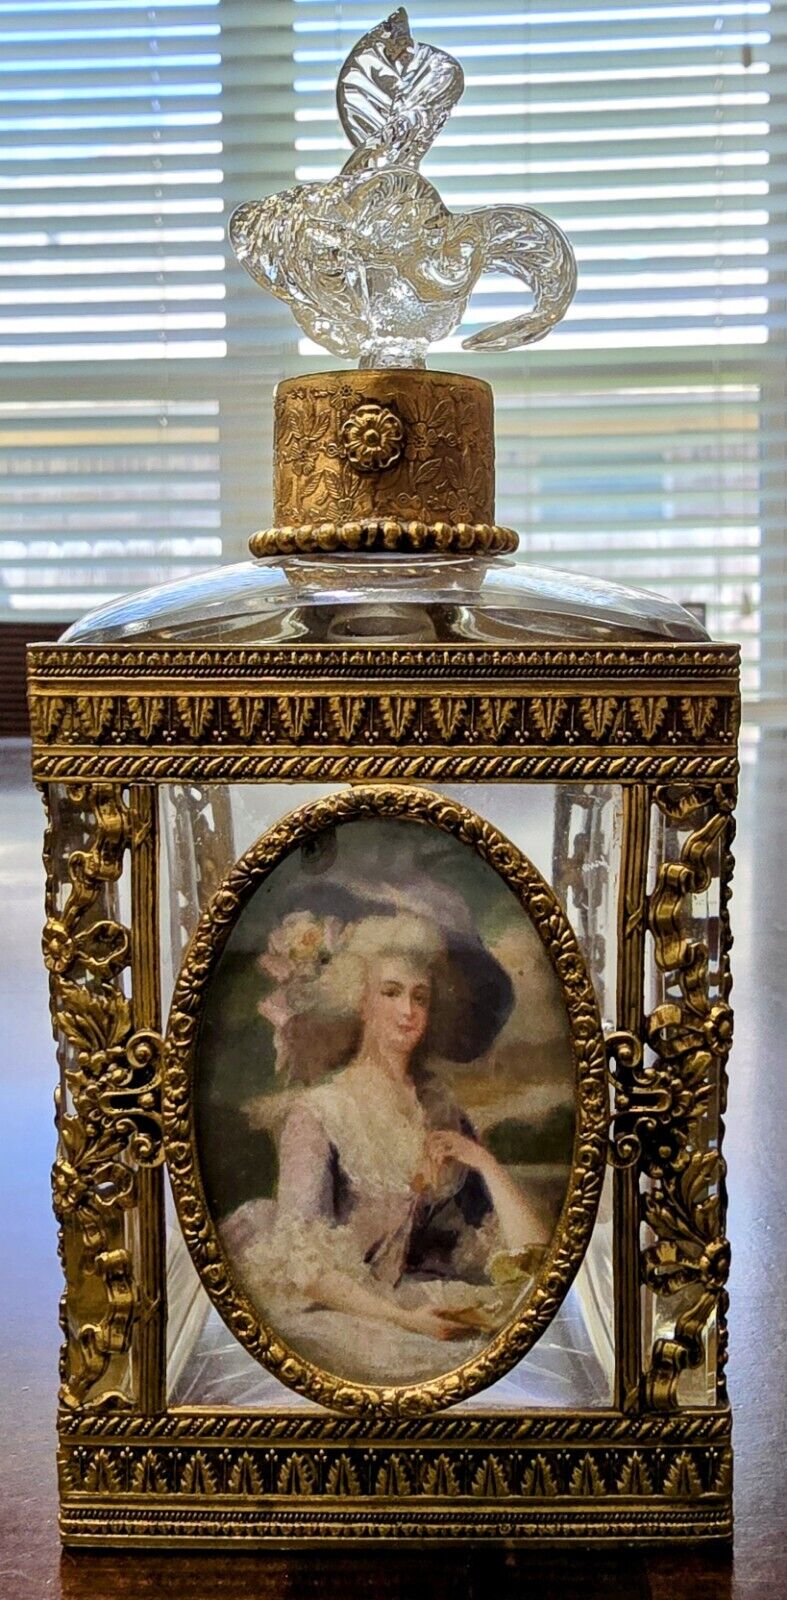 Finest Quality Antique Empire Perfume Bottle w/ Exquisite Hand Painted Portrait